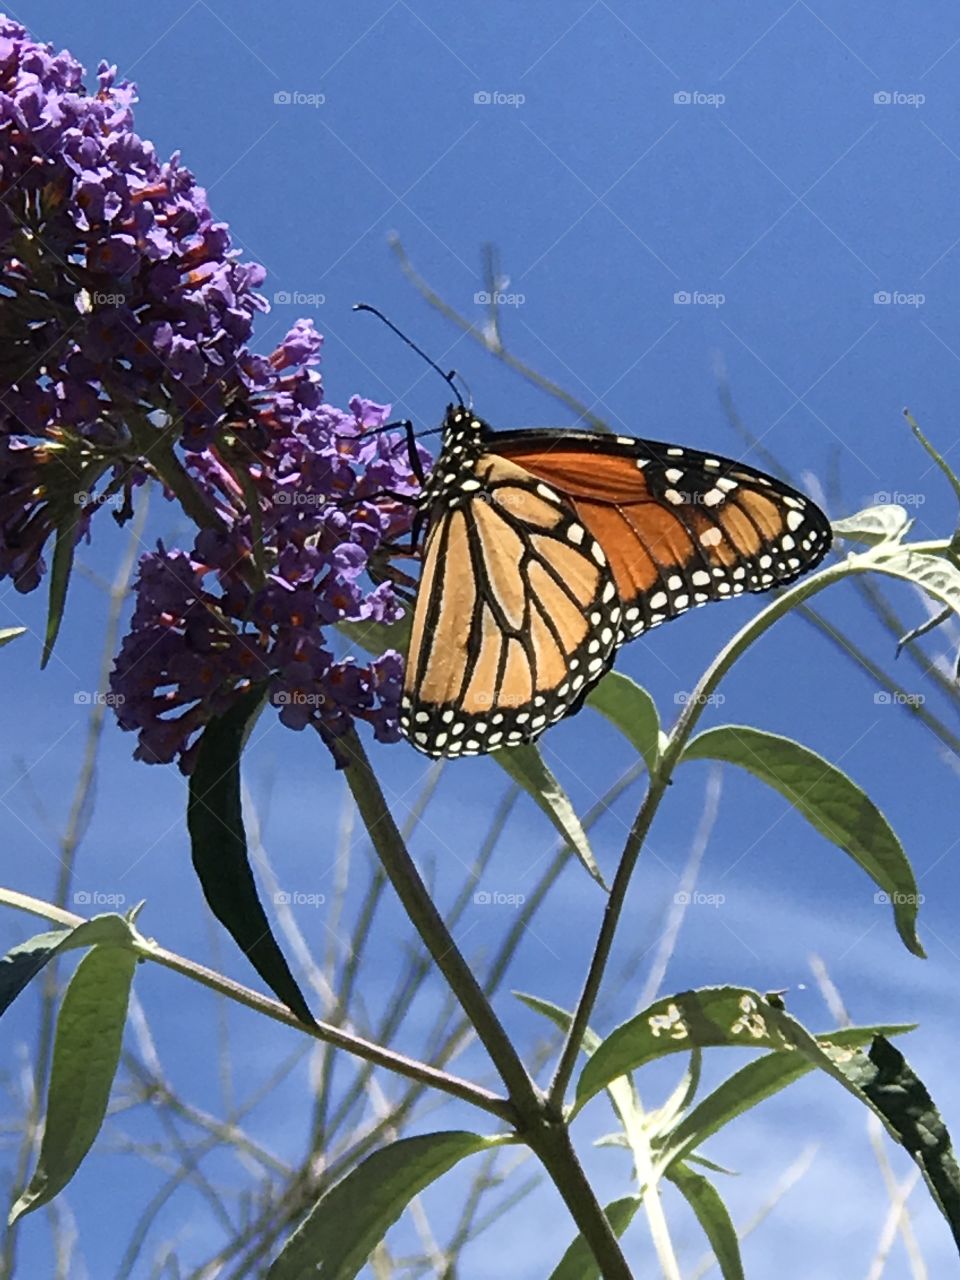 Orange monarch butterfly on flower